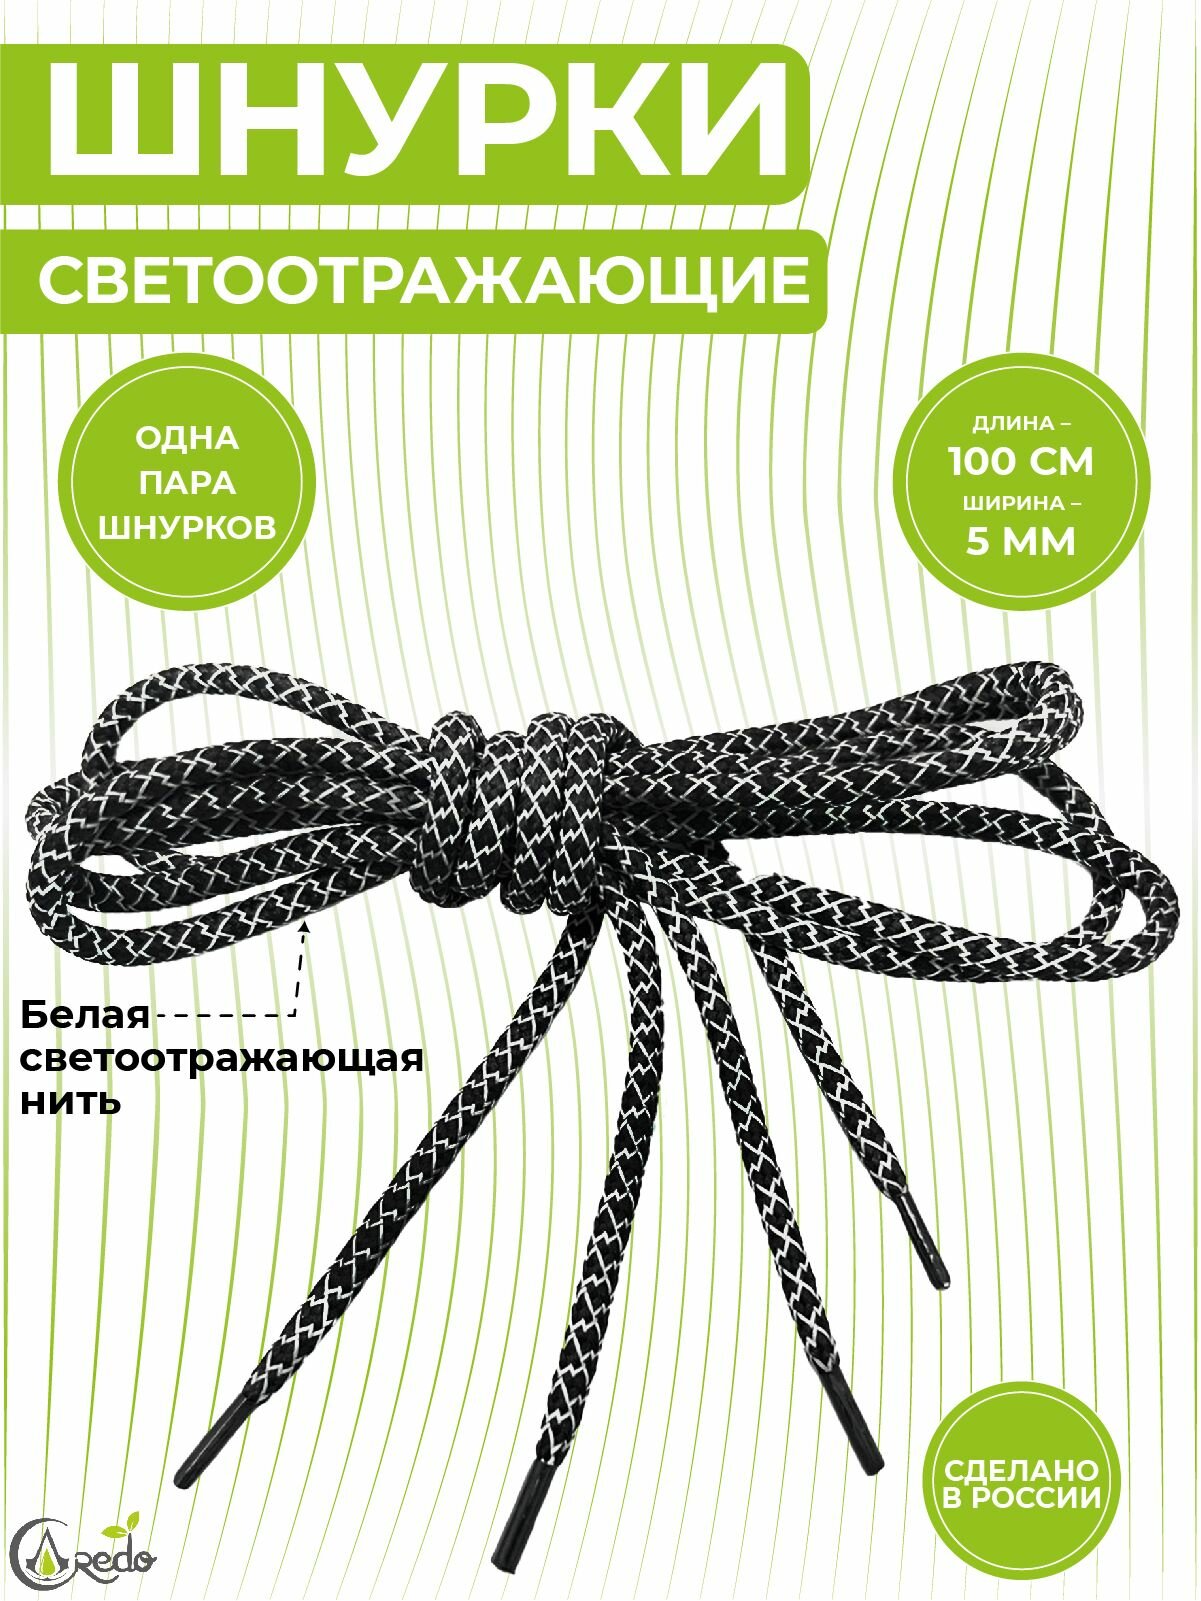 Шнурки светоотражающие для кроссовок и другой обуви, длина 100 сантиметров, диаметр 5 мм. Сделано в России. 1 пара.